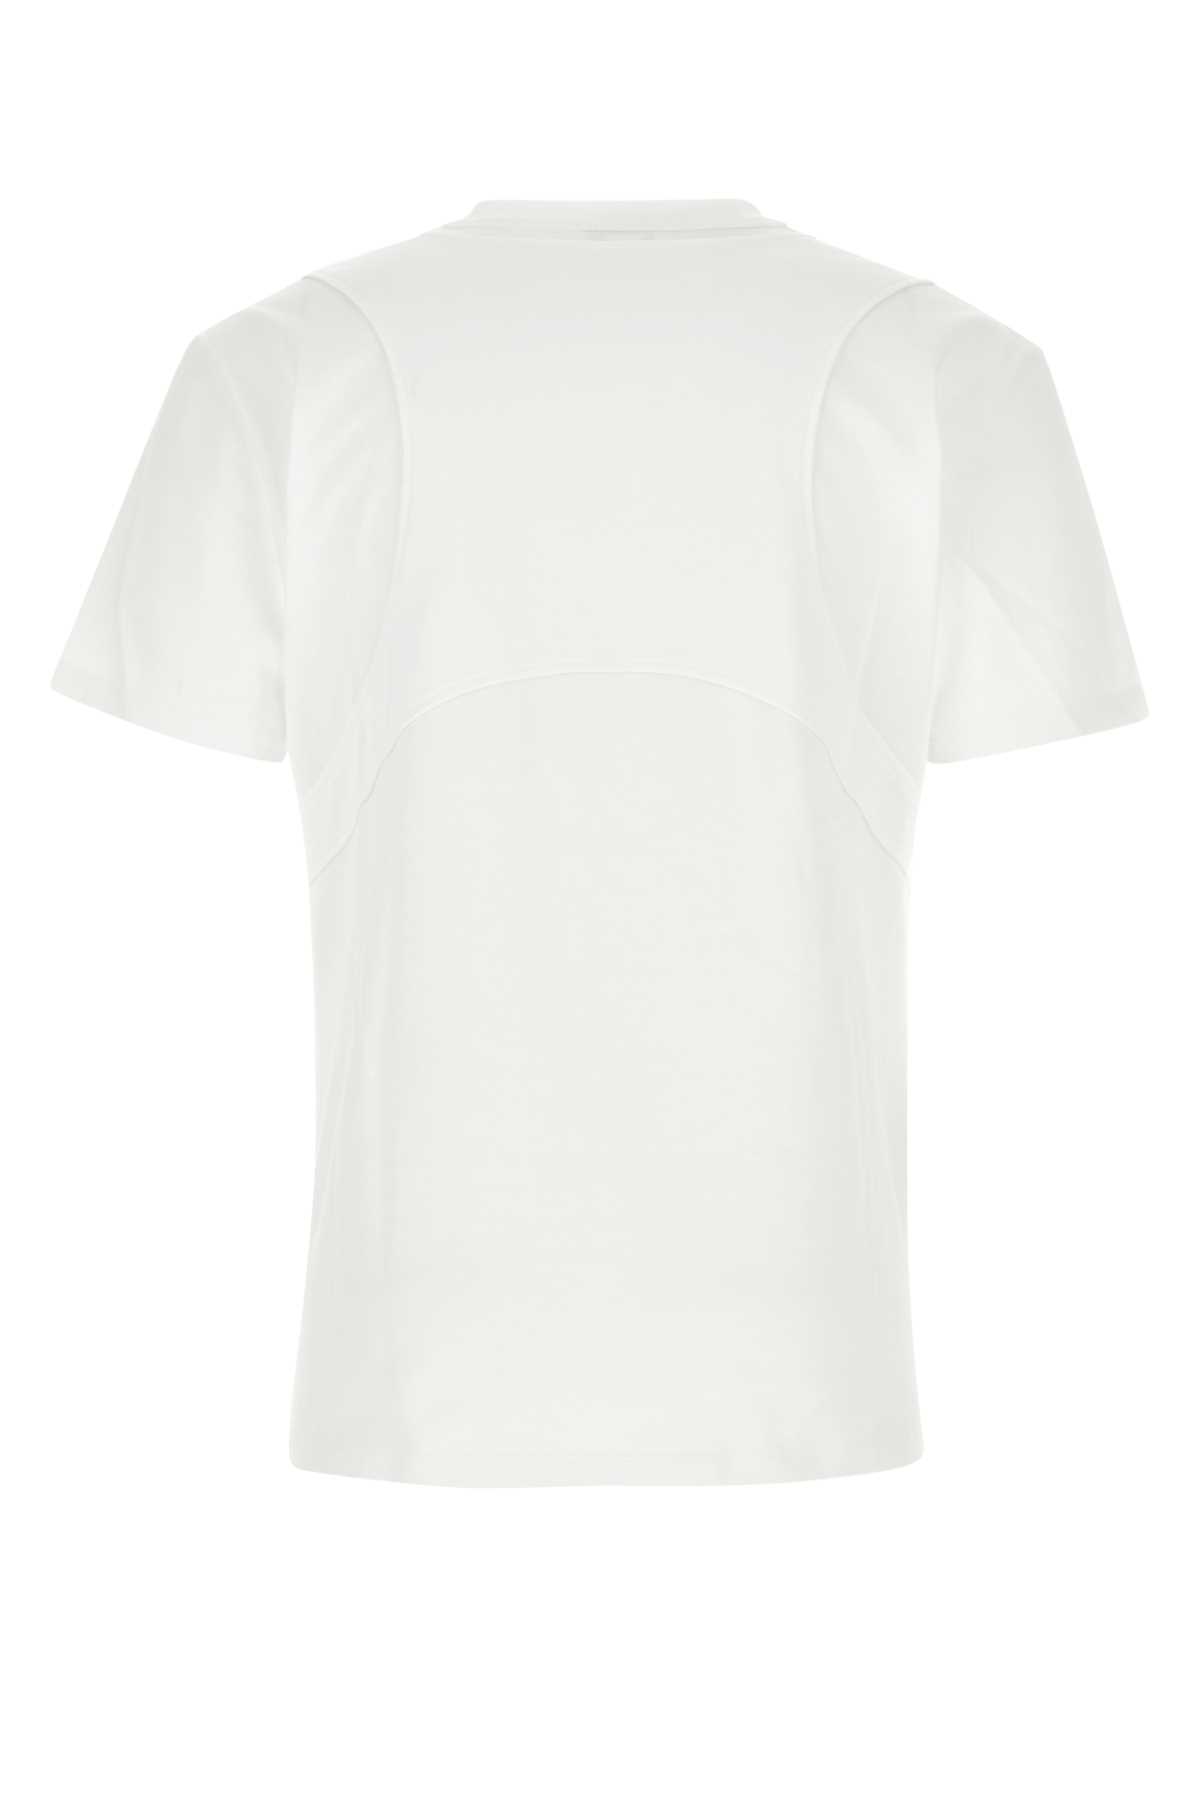 Alexander Mcqueen White Cotton T-shirt In 9000